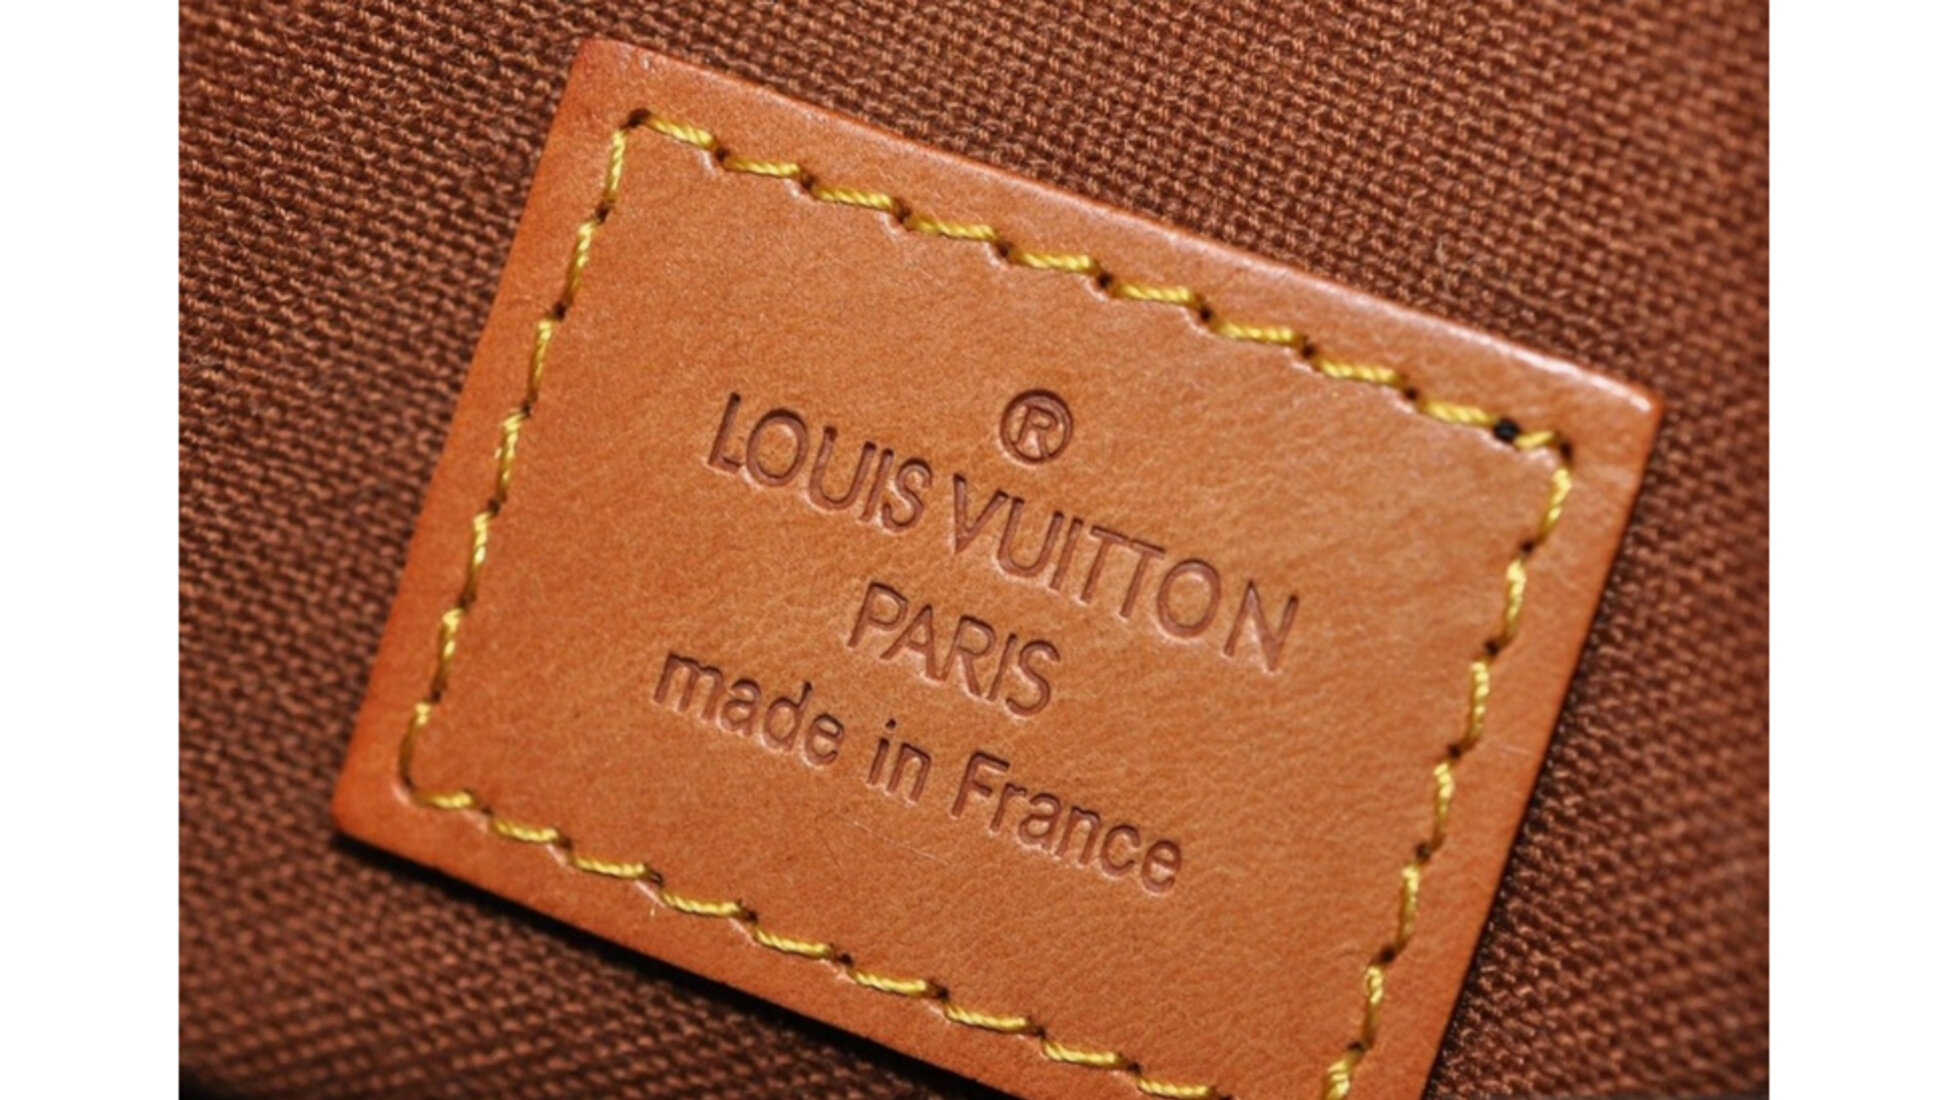 Cómo saber si ese Louis Vuitton es Autentico y Original — VON ROSENTHAL